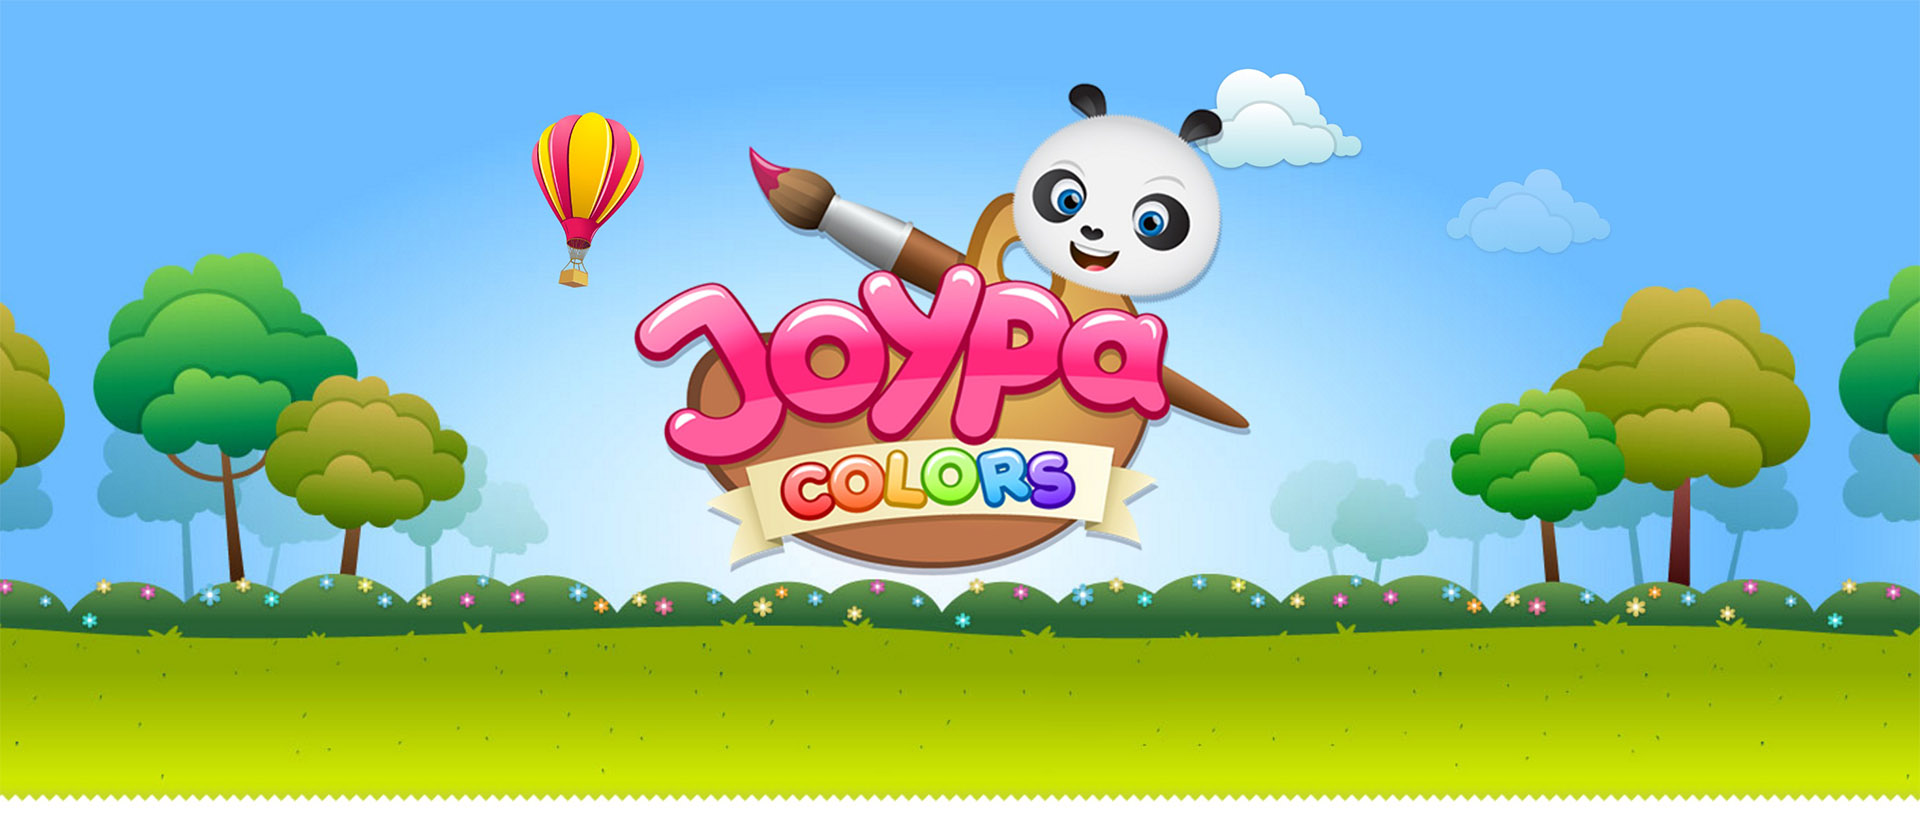 Joypa Colors